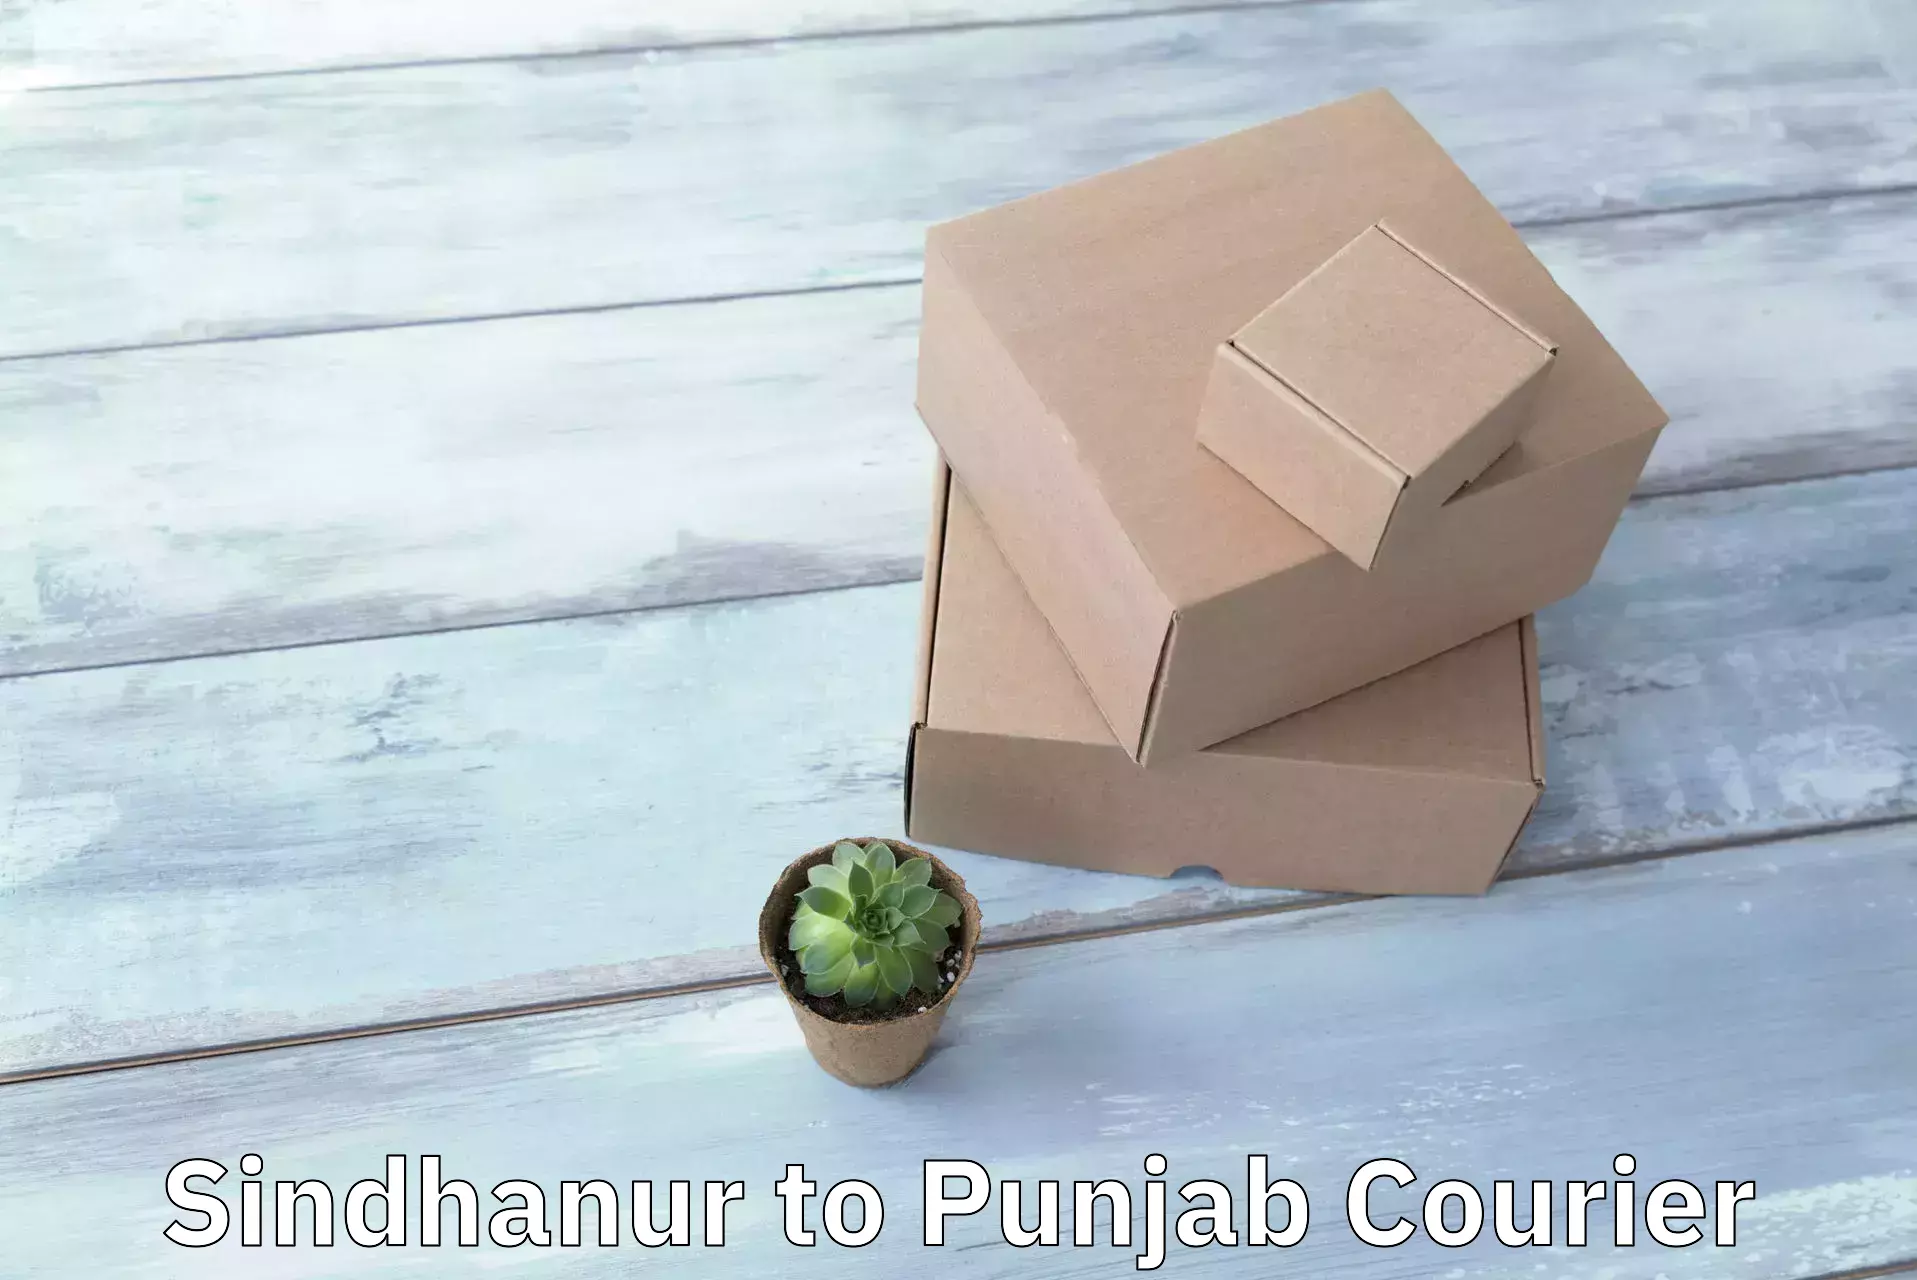 Professional courier handling Sindhanur to Jalalabad